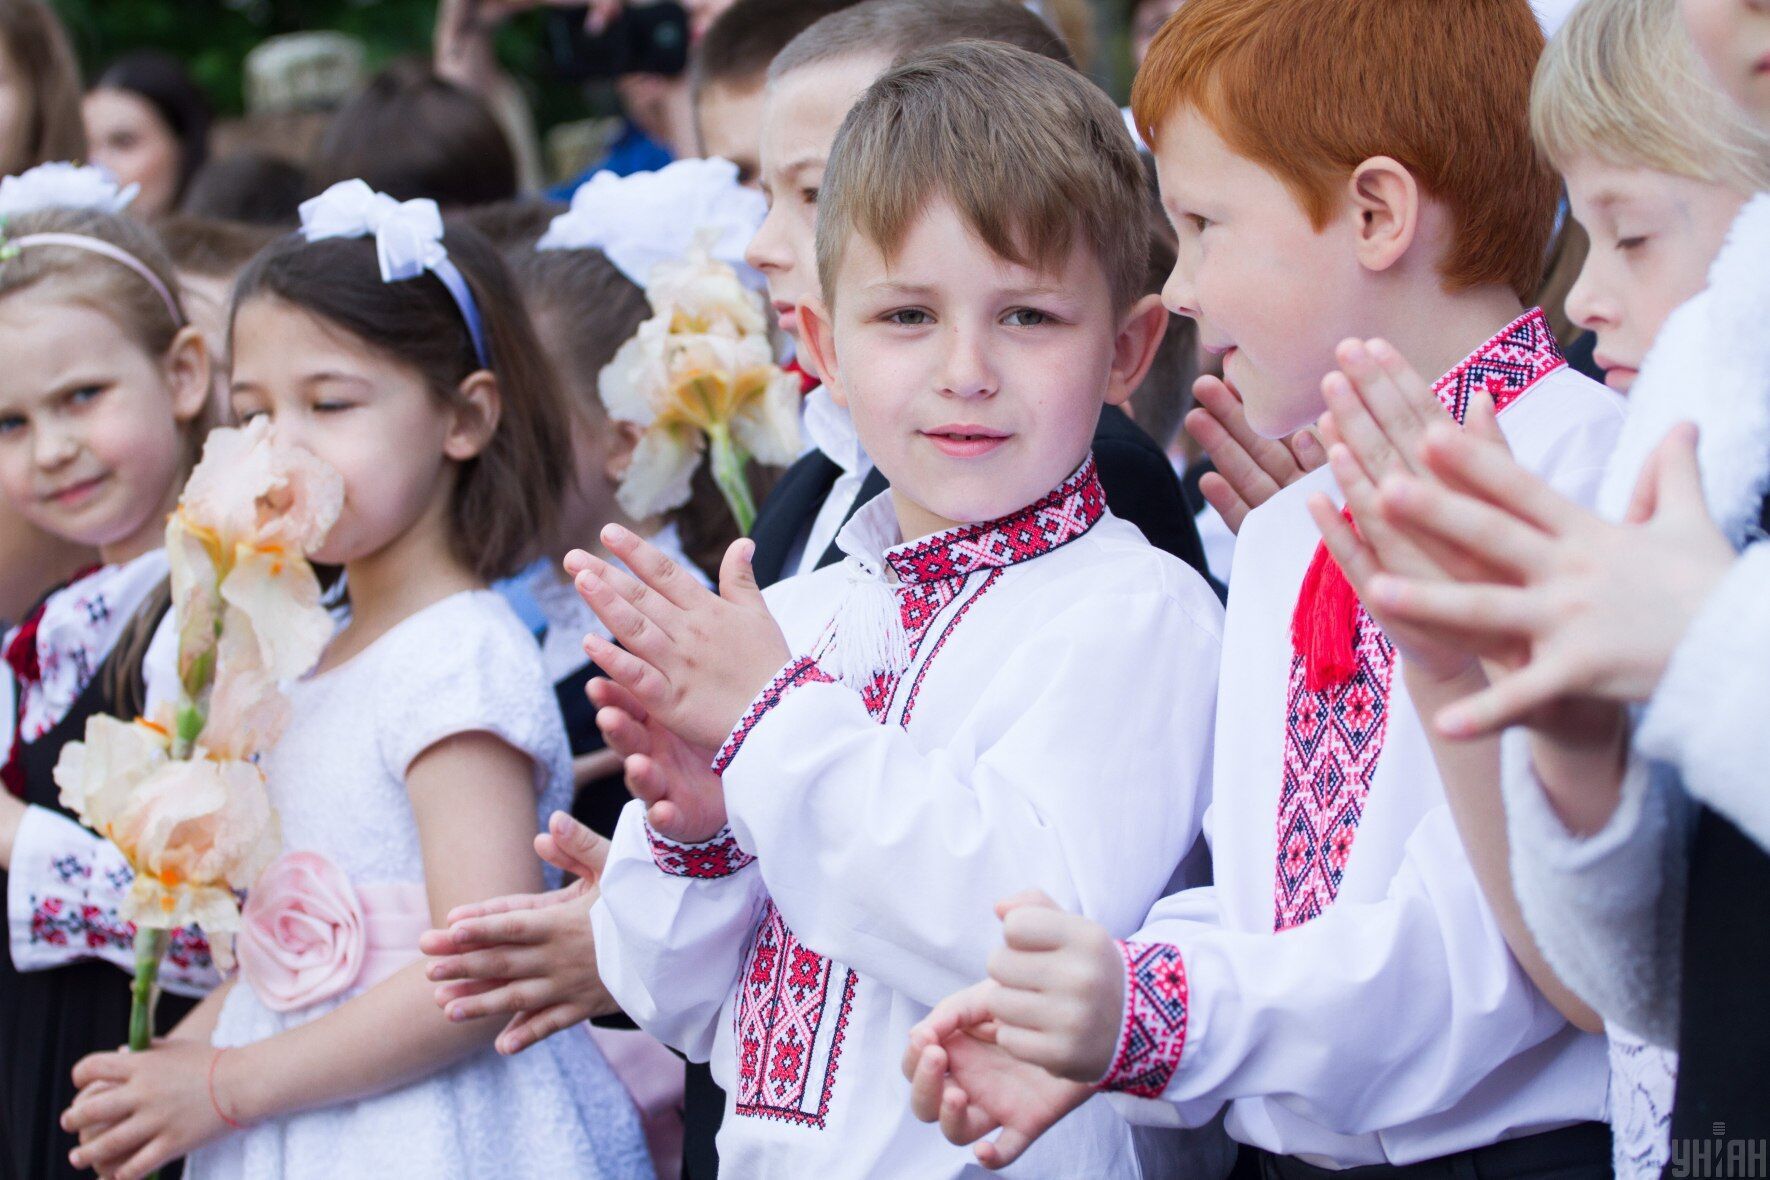 Дата останнього дзвоника в Україні 2021 року, рекомендована Міністерством освіти і науки, – 26 травня